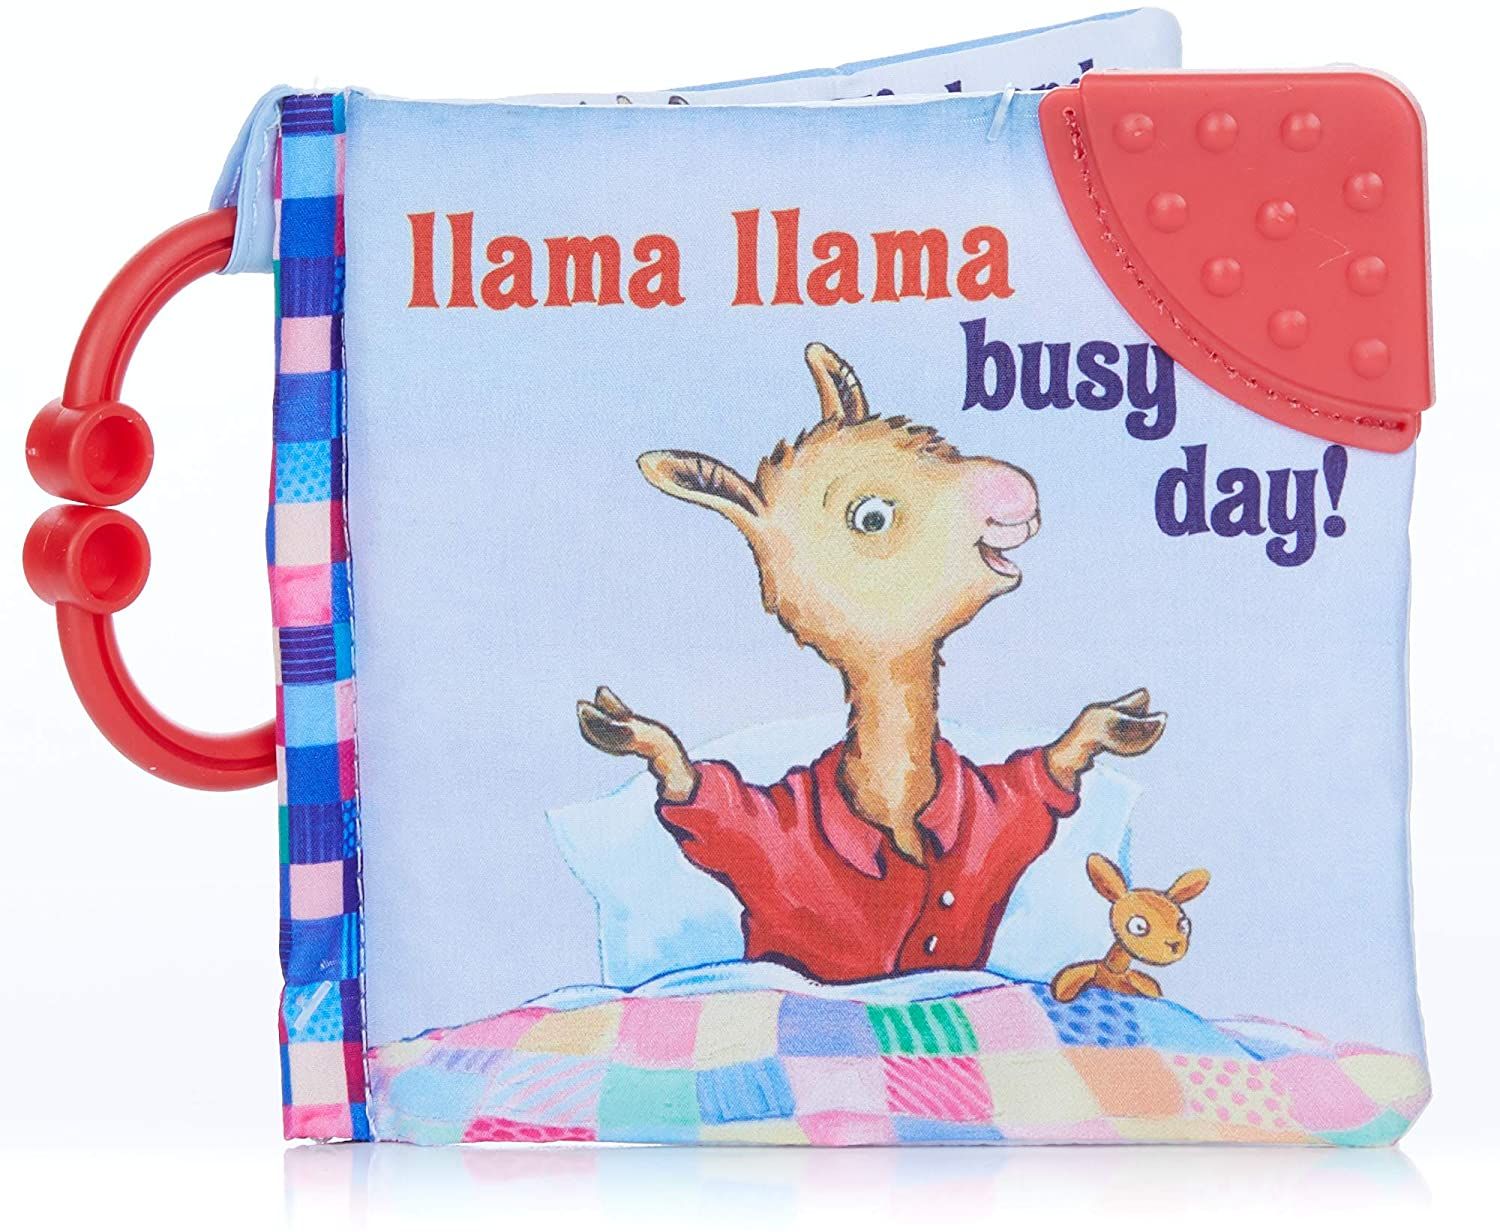 Llama Llama Busy Day cover